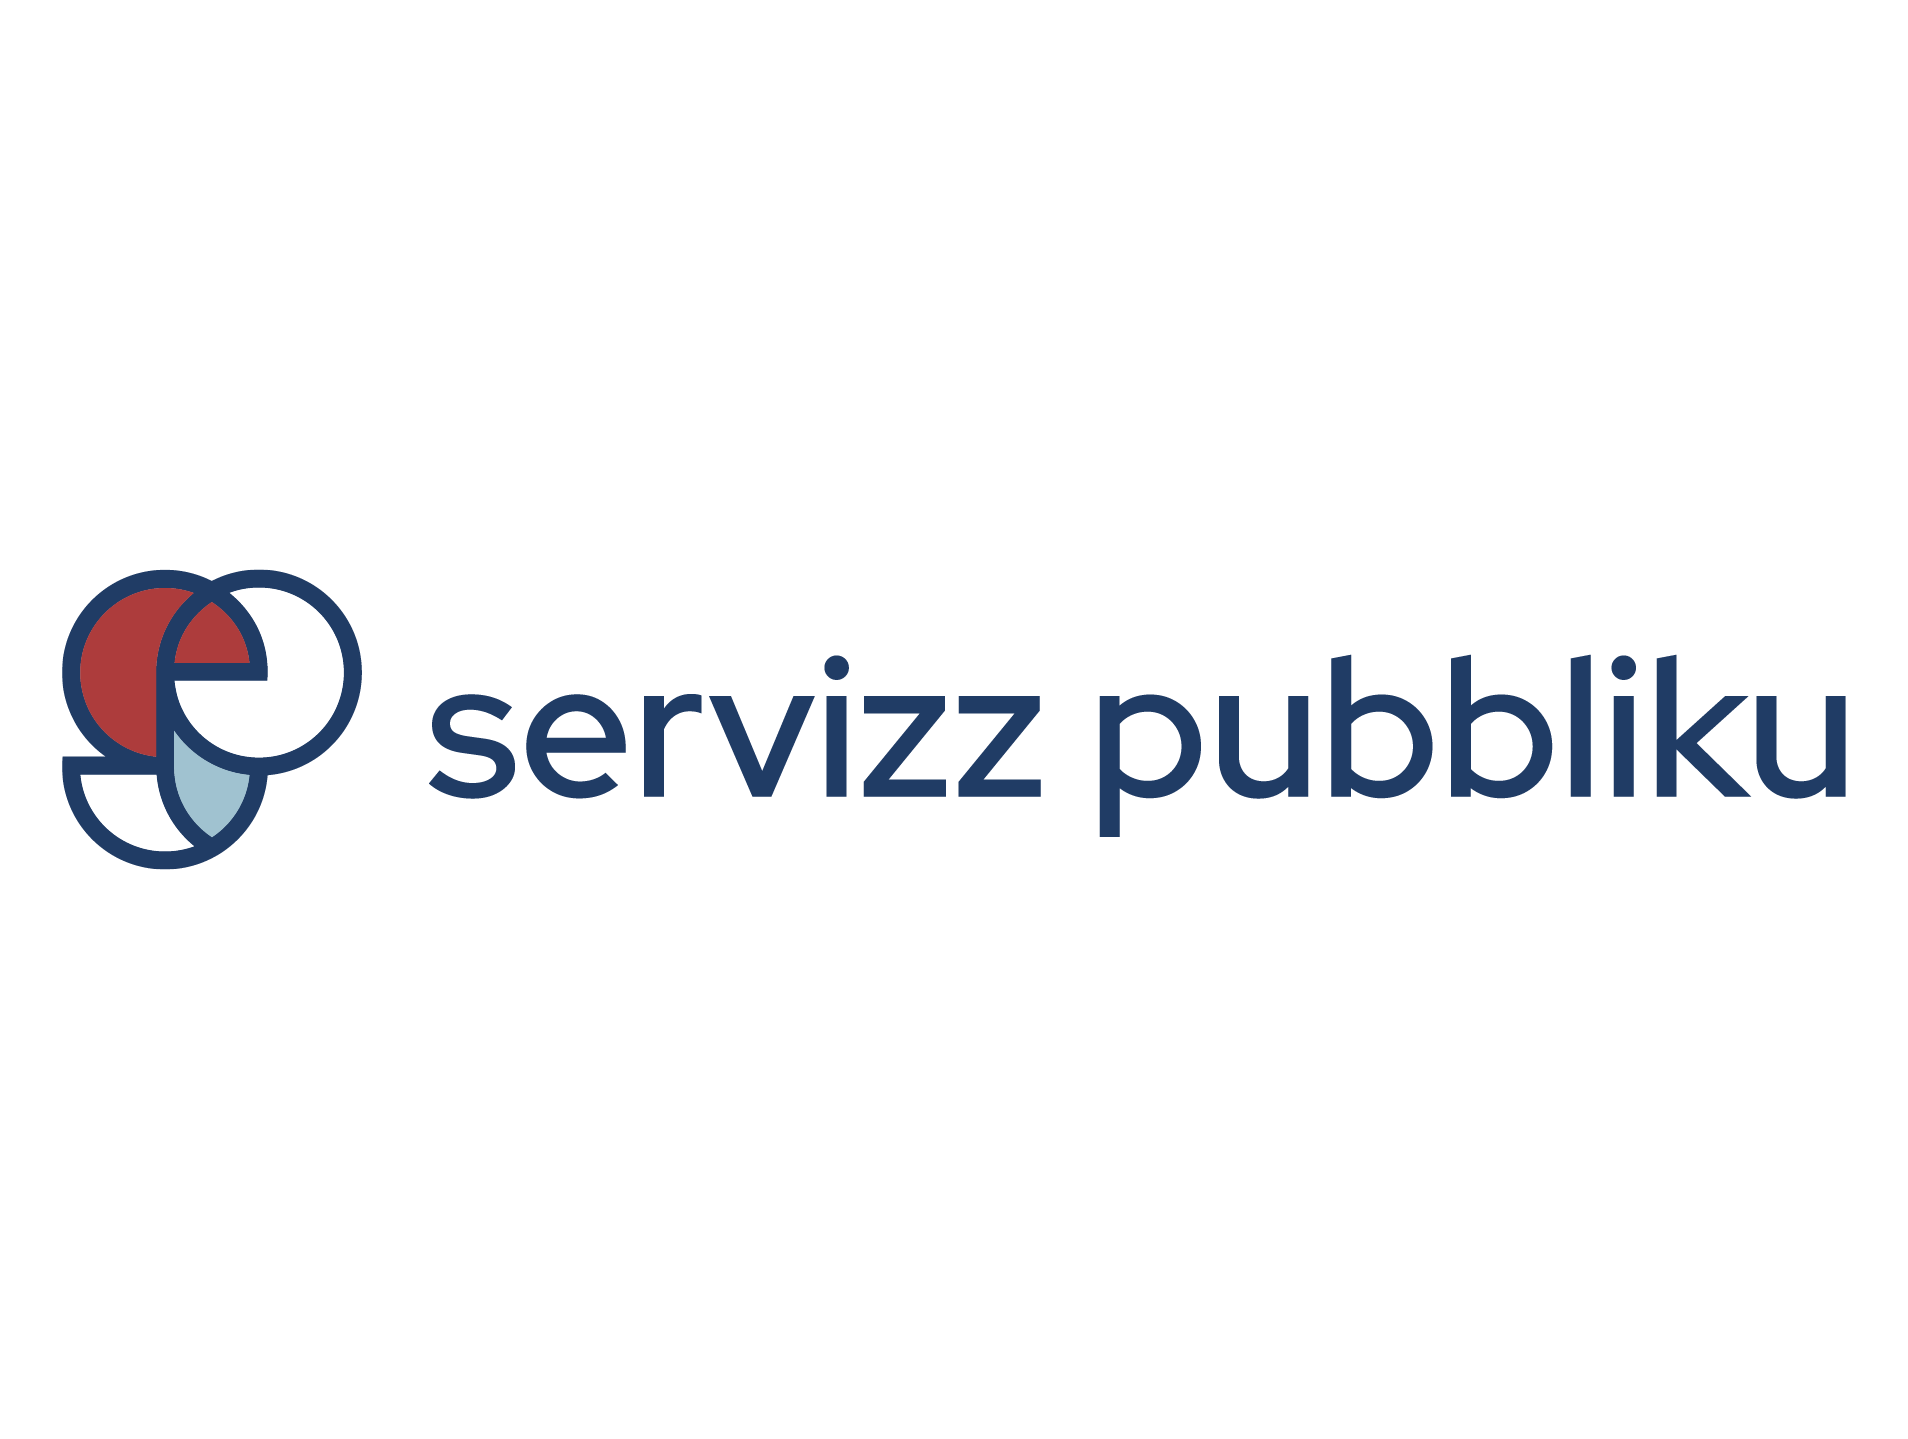 publicService